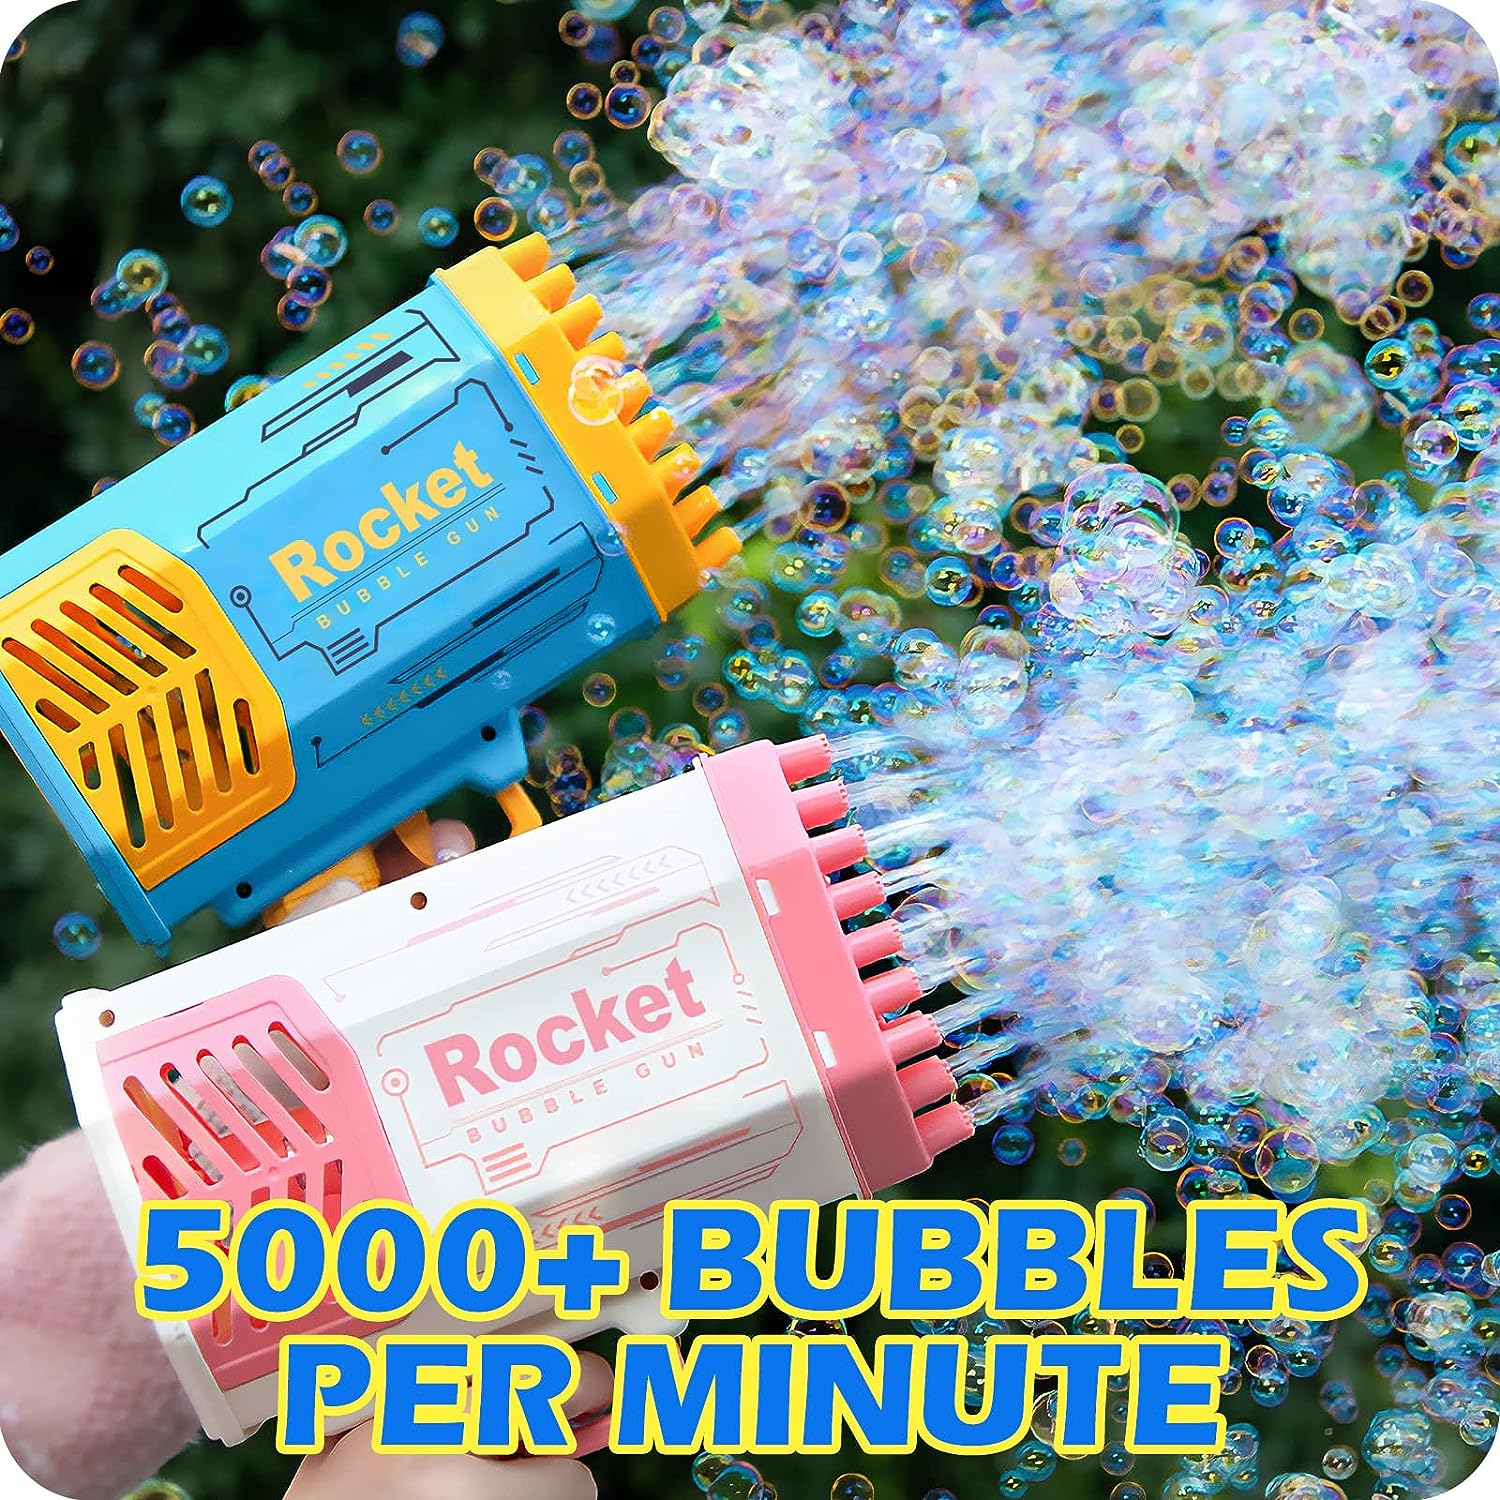 Bubbly's 24 Hole Bazooka Bubble Blower